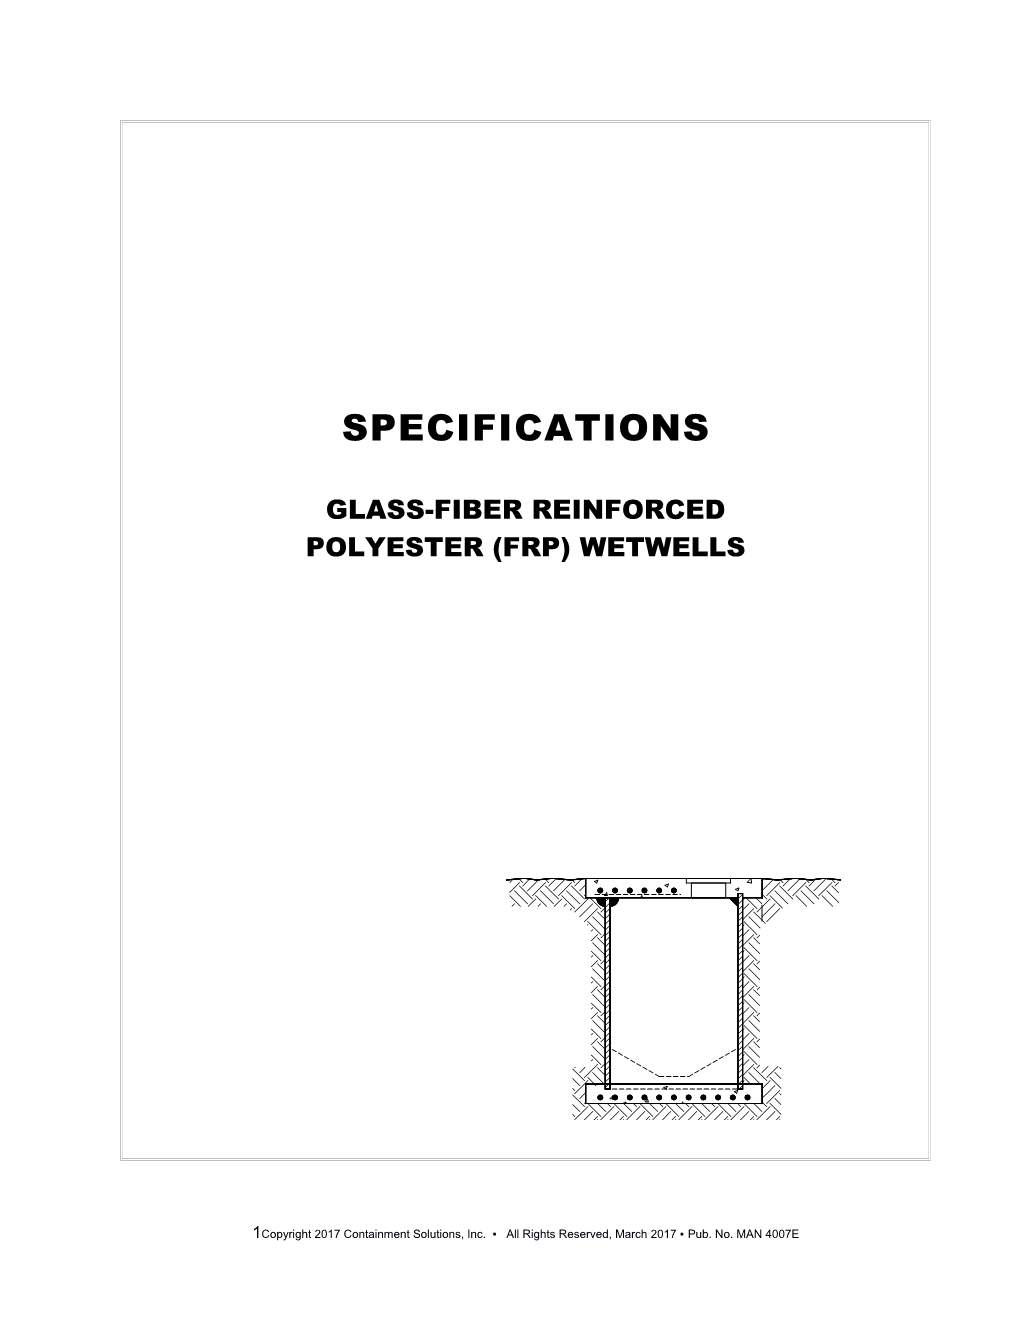 Glass-Fiber Reinforced Polyester (Frp) Wetwells